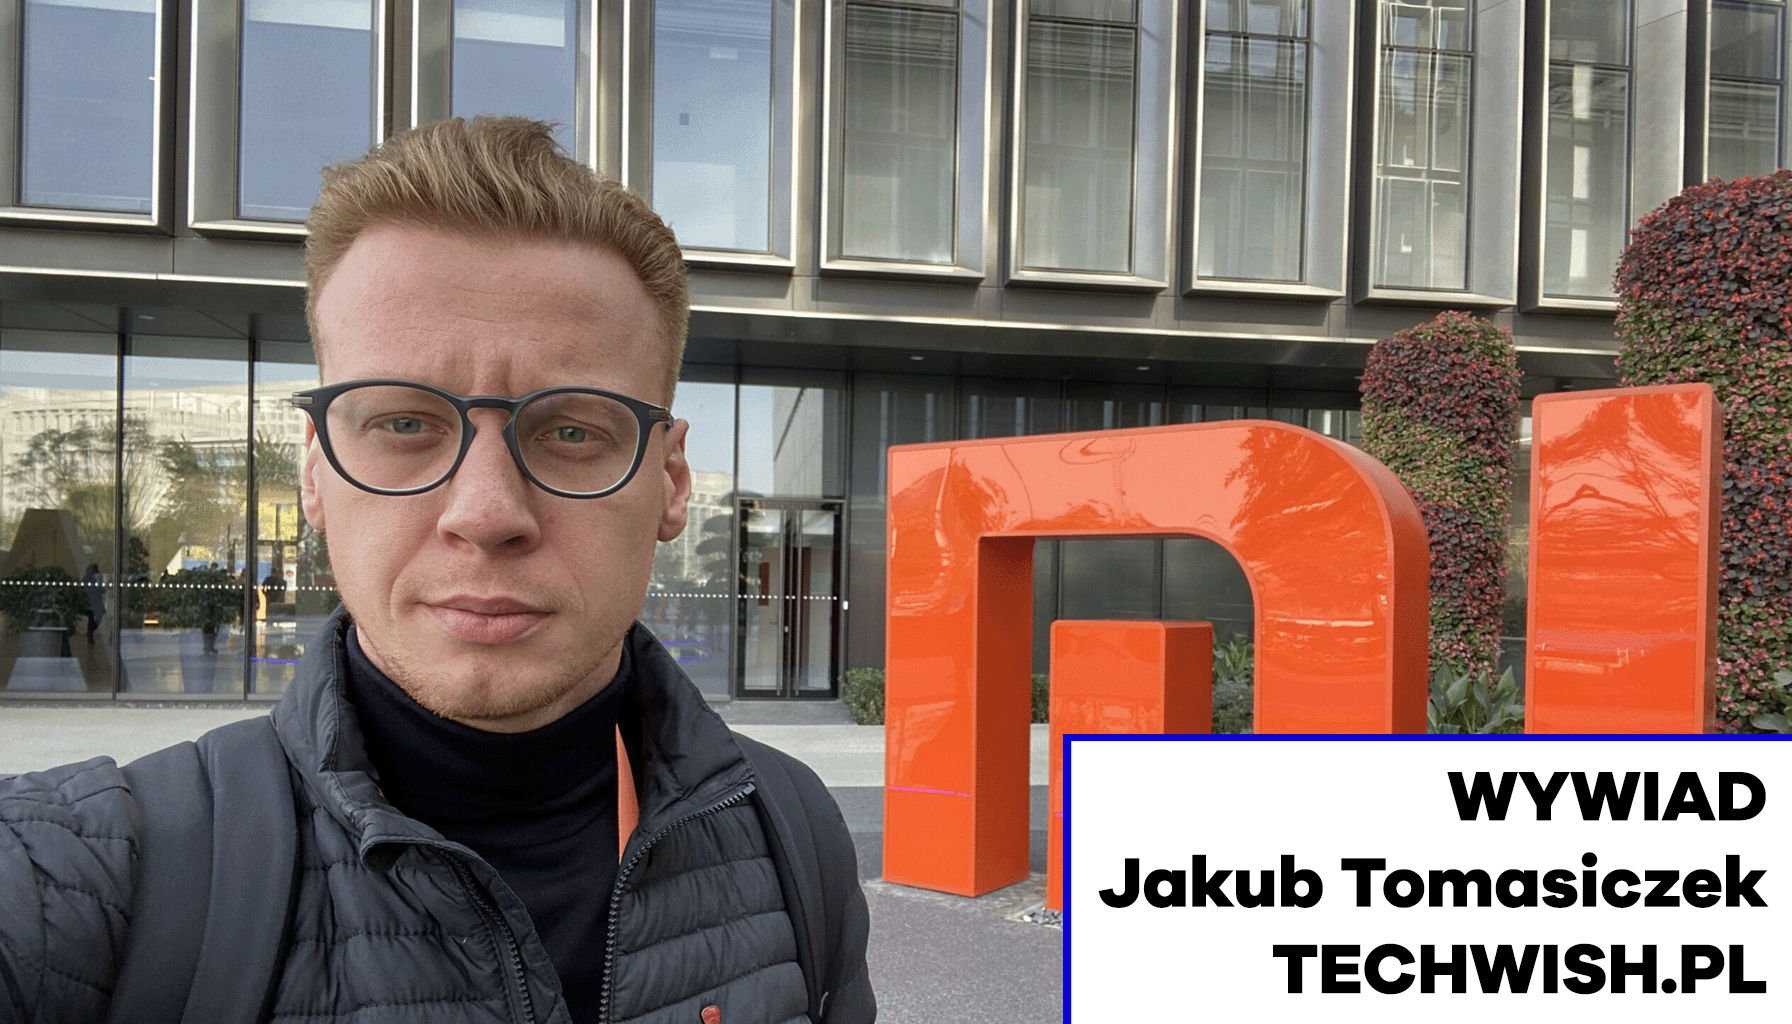 Wywiad z Jakubem Tomasiczkiem – założycielem Techwish.pl Chiny MEDIARUN.COM JAKUB TOMASICZEK TECHWISH WYWIAD V2